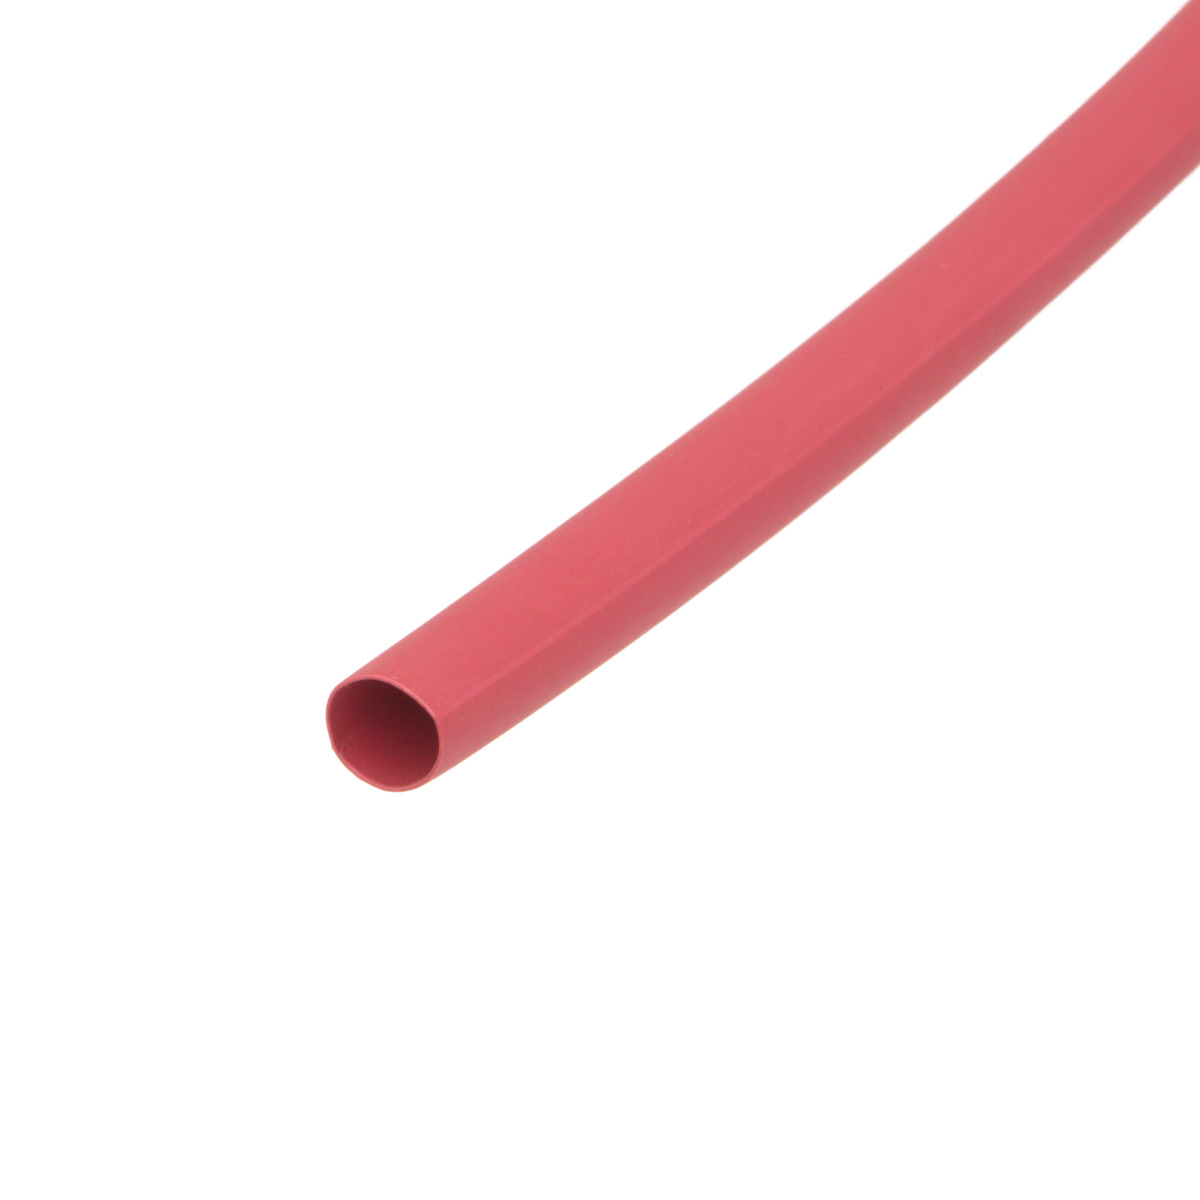 Pack de corte [1.2m] de tubo termorretráctil 2:1 Ø38.1mm rojo – Poliolefina libre de halógeno e ignífugo [x5]